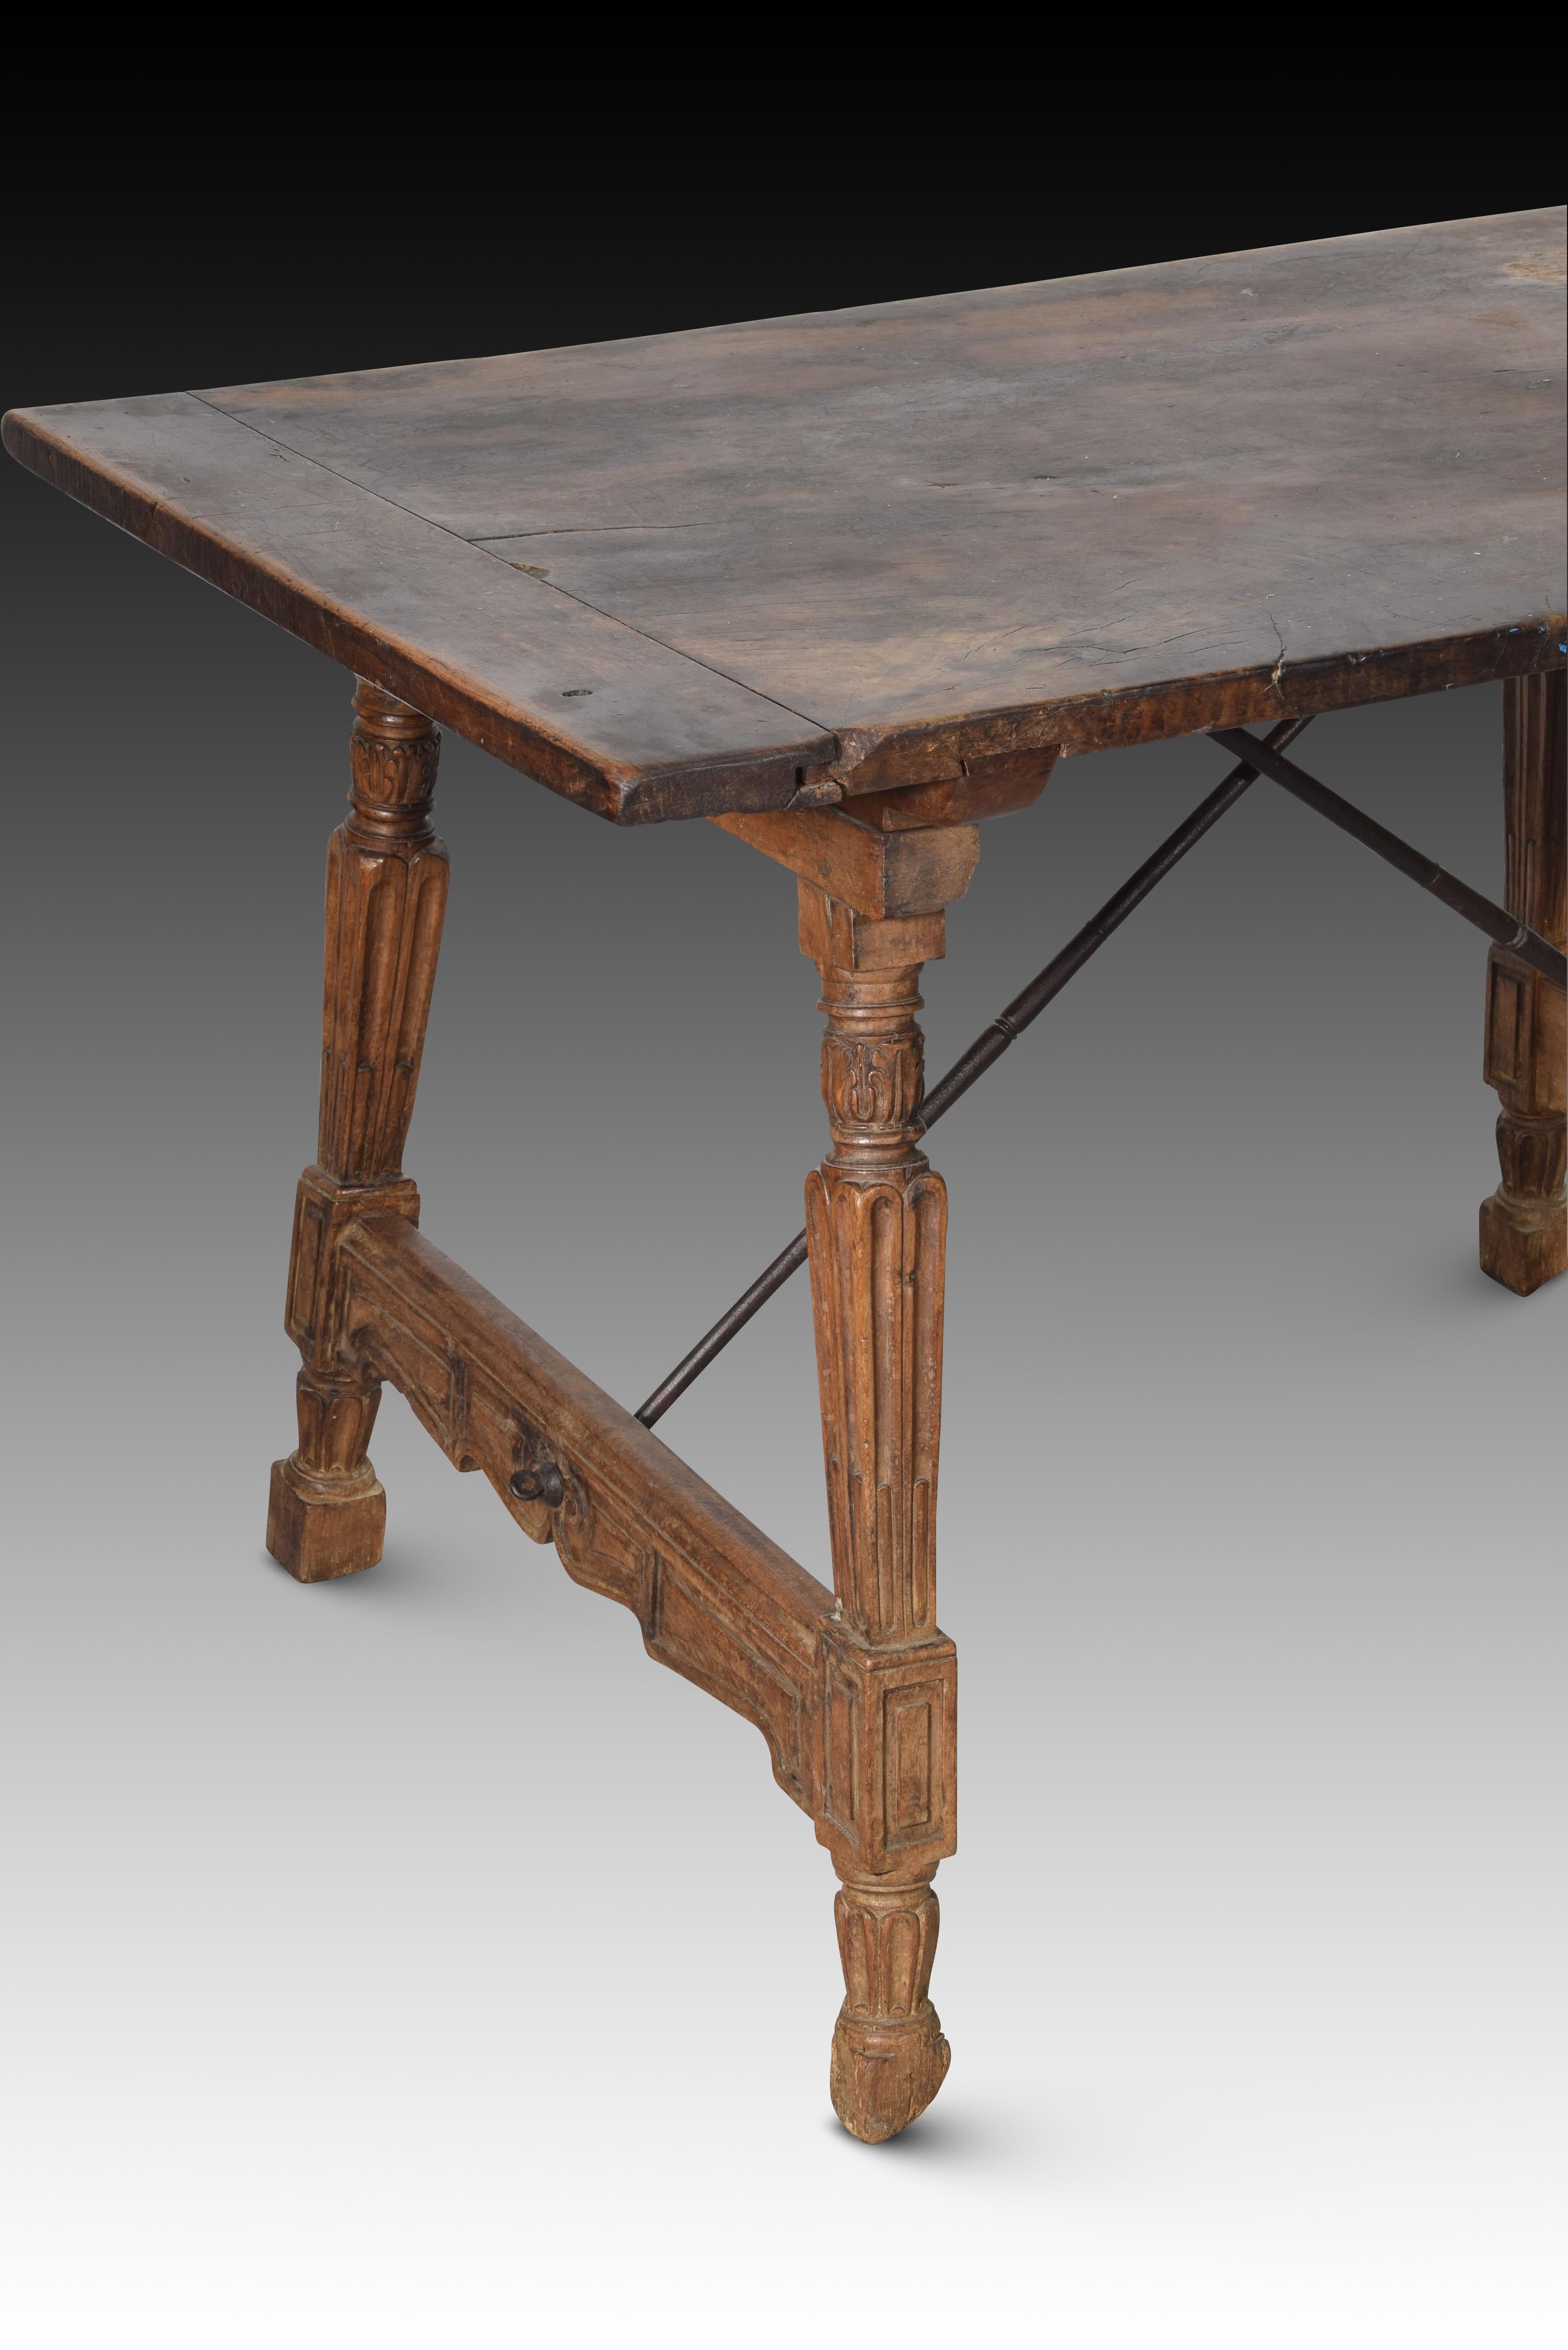 Renaissance Table, Walnut, Iron, Spain, 16th Century